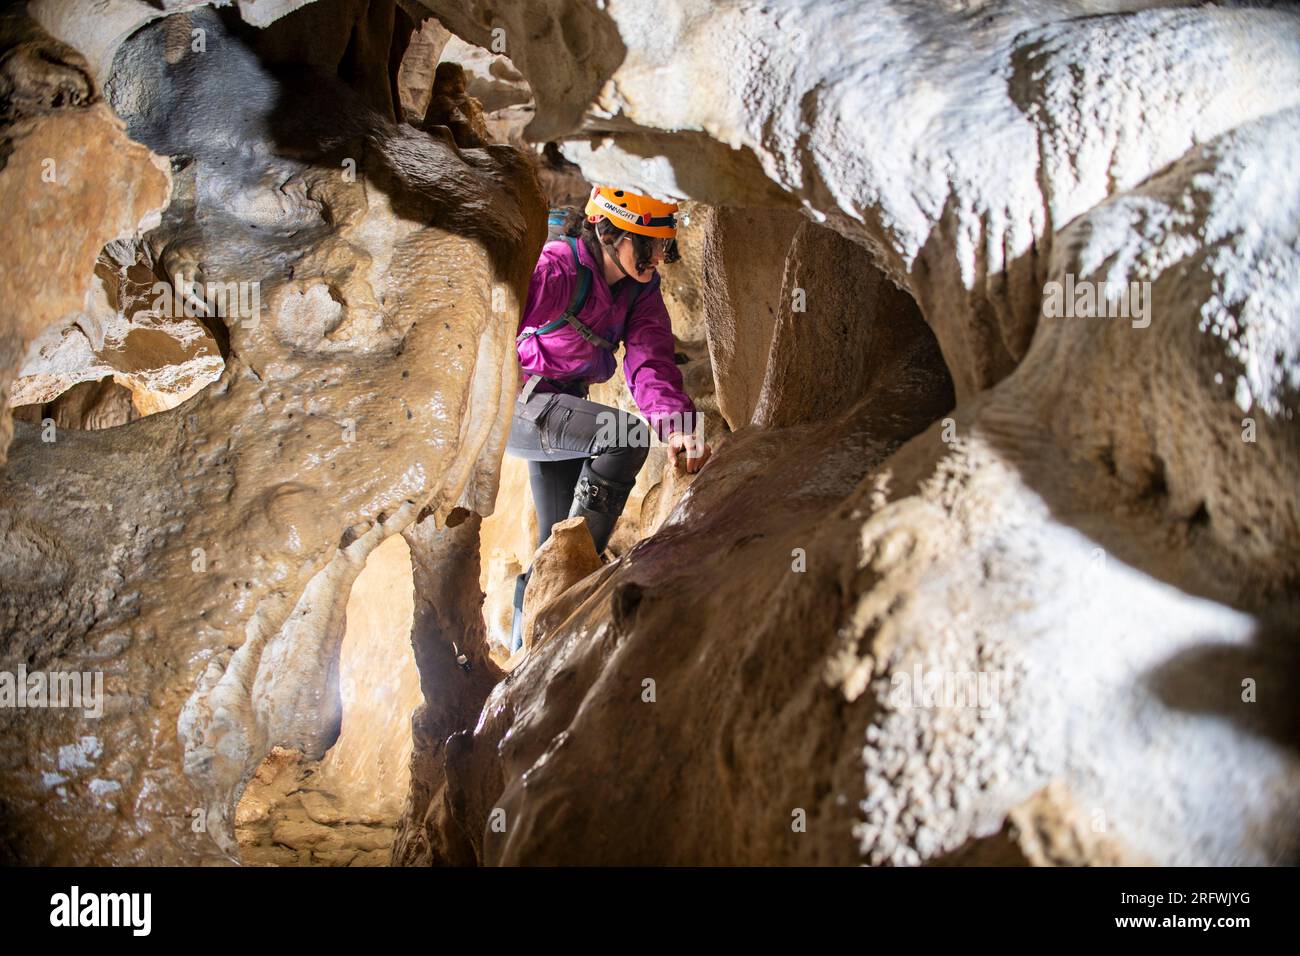 Jeune femme spelunking à l'intérieur d'une grotte. Concept féministe. Concept de sport féminin. Banque D'Images